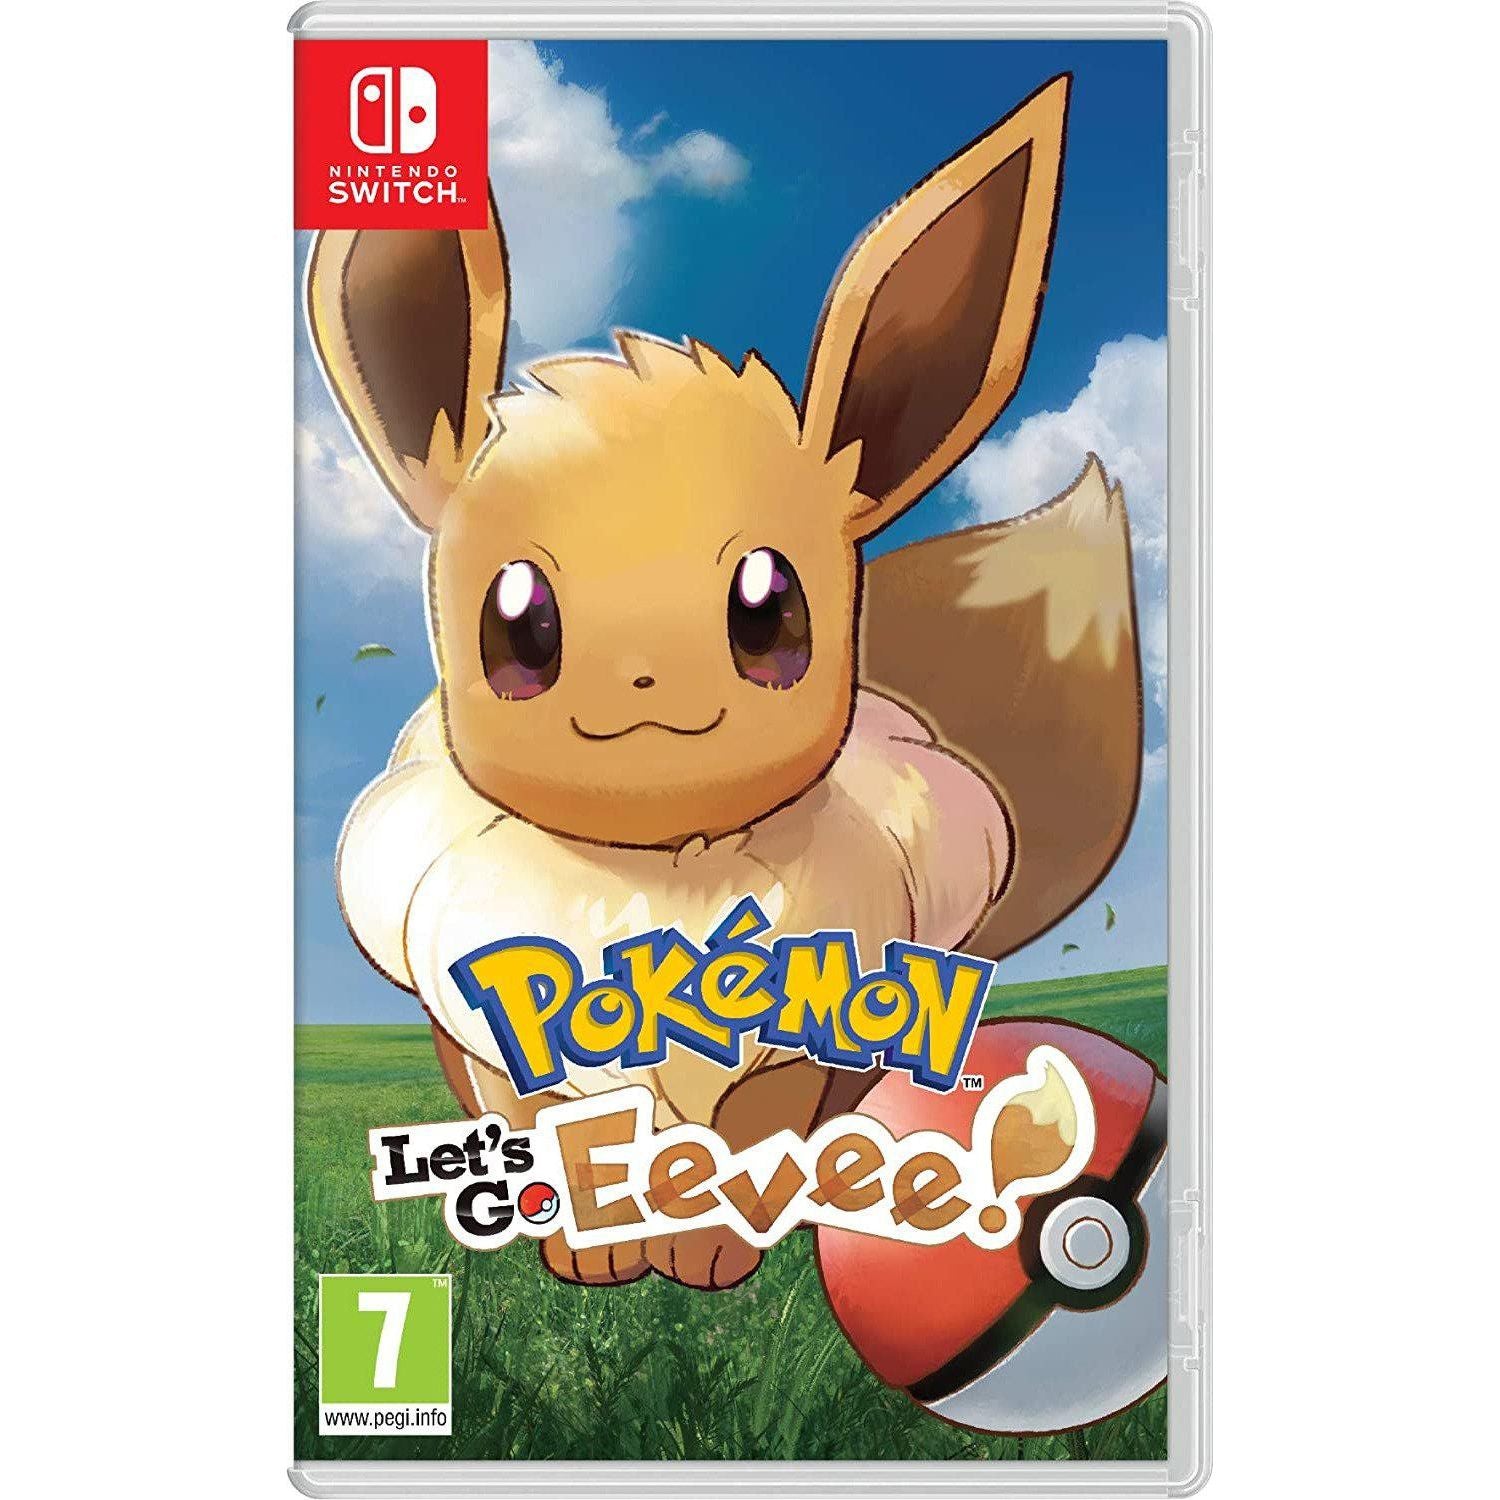 Nintendo Switch - Pokemon: Let's Go Eevee! (US/LATAM)